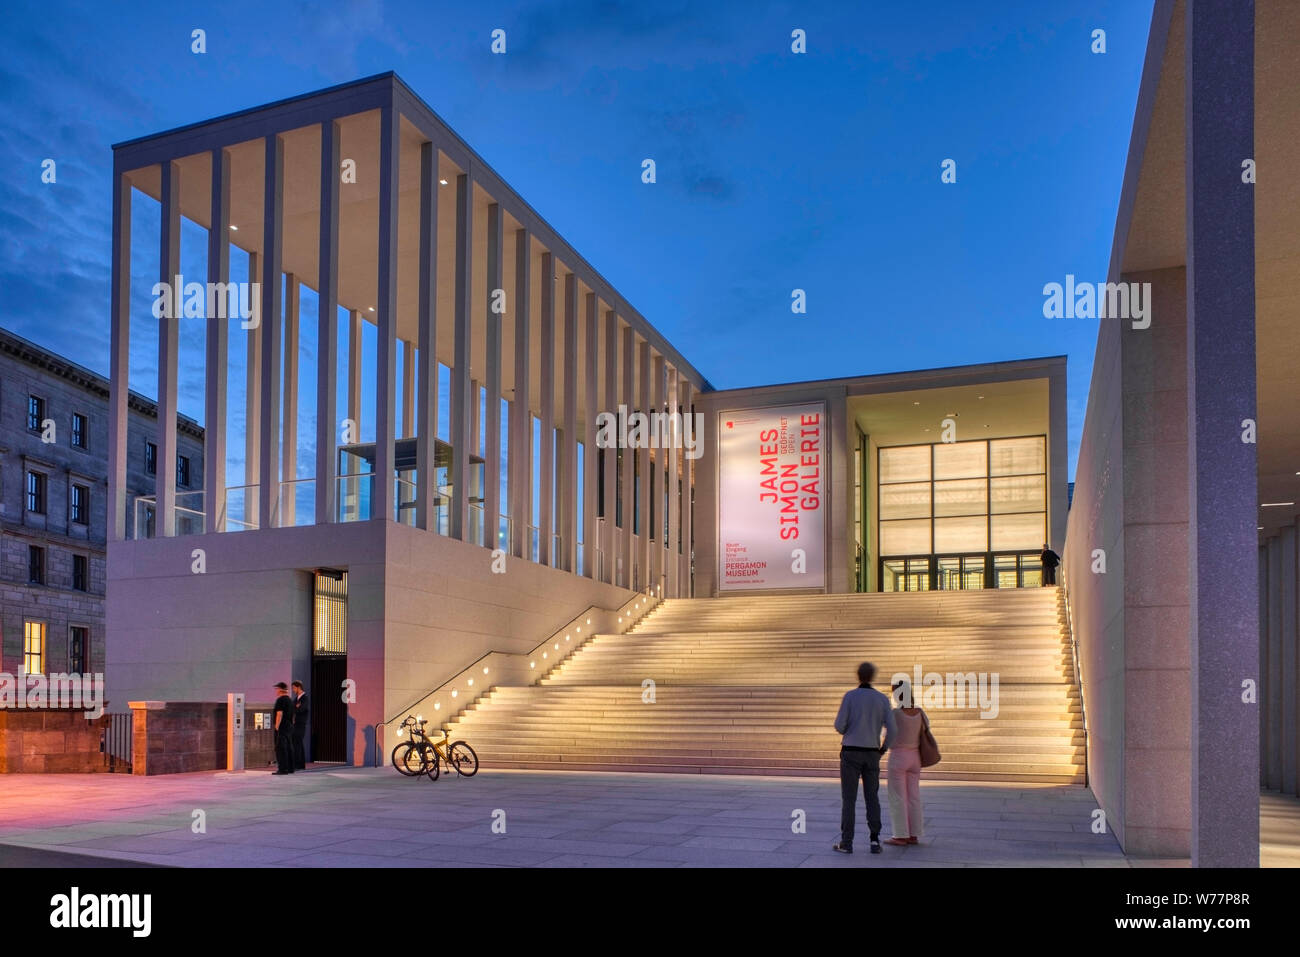 James Simon, Galerie David Chipperfield Architects, Neues Museum, Musée de Pergame, l'île aux musées, Berlin Mitte, Berlin, Allemagne Banque D'Images